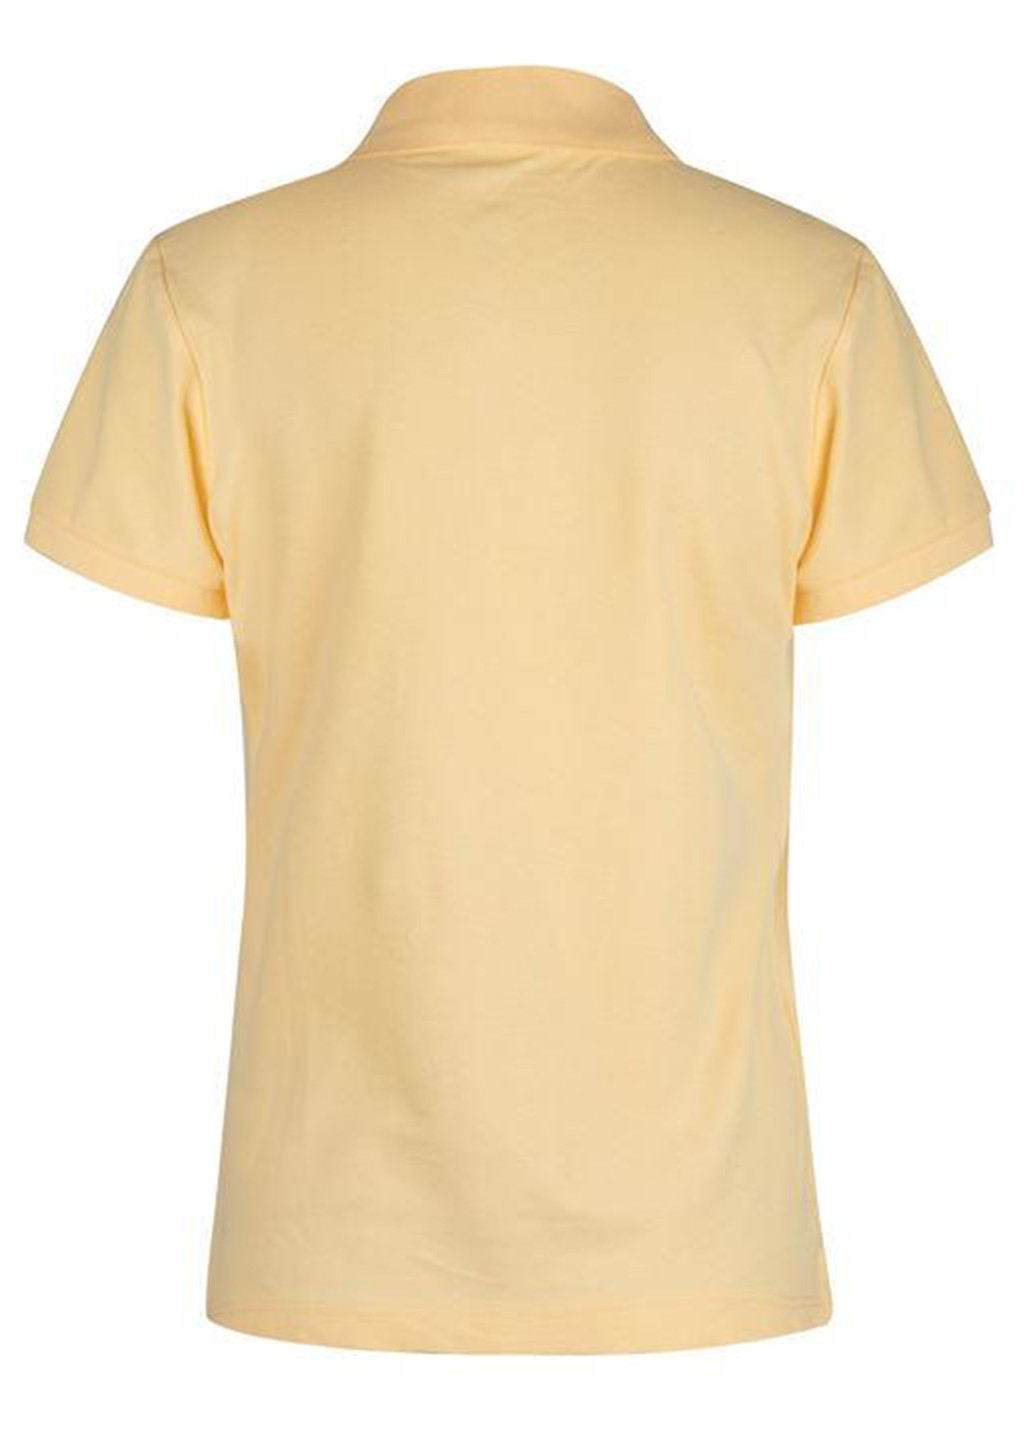 Желтая женская футболка-поло Lee Cooper с логотипом